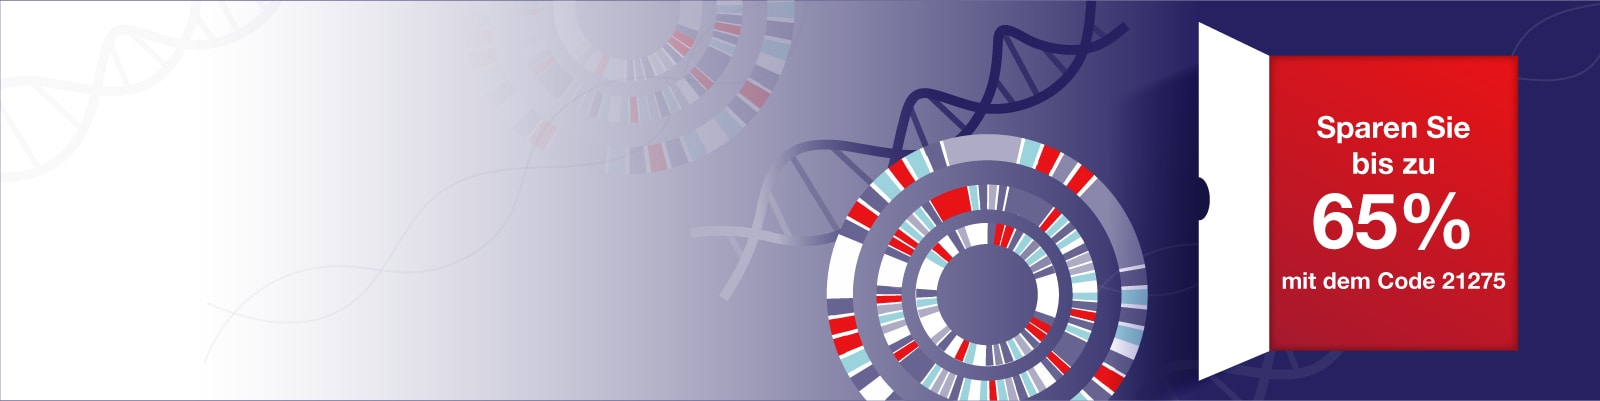 DNA-Sequenzierung banner